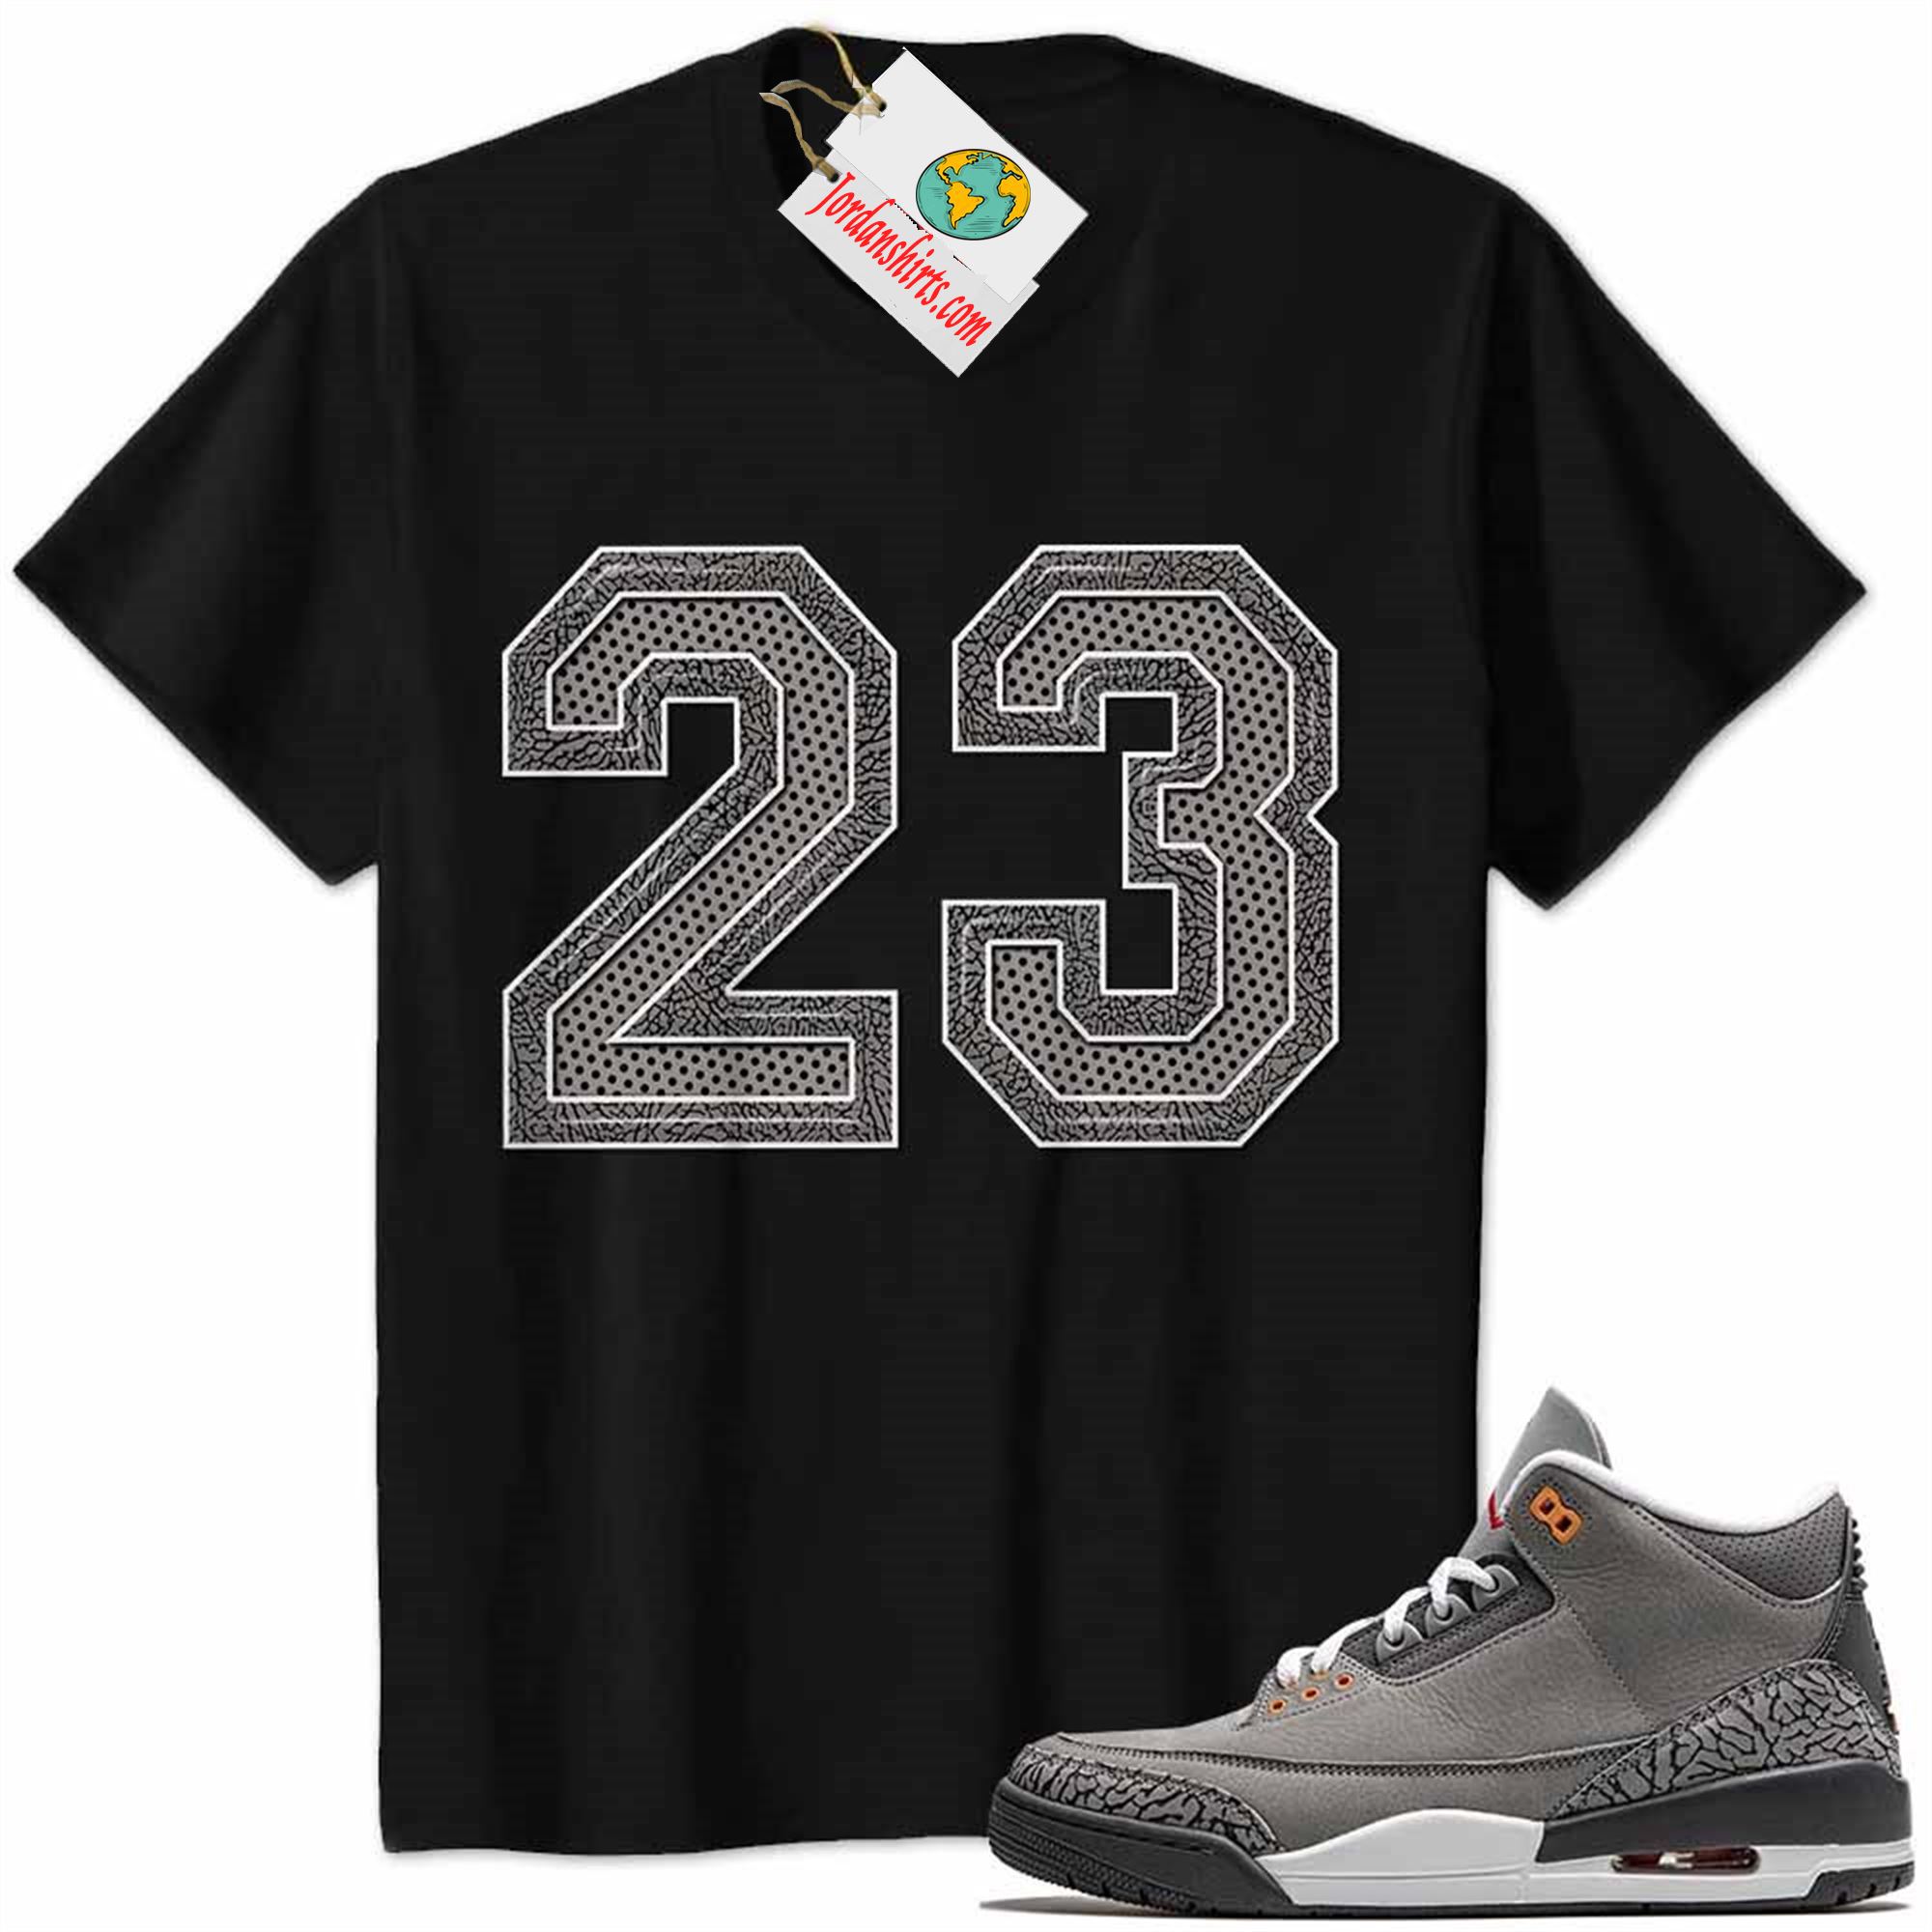 Jordan 3 Shirt, Jordan 3 Cool Grey Shirt Michael Jordan Number 23 Black Size Up To 5xl